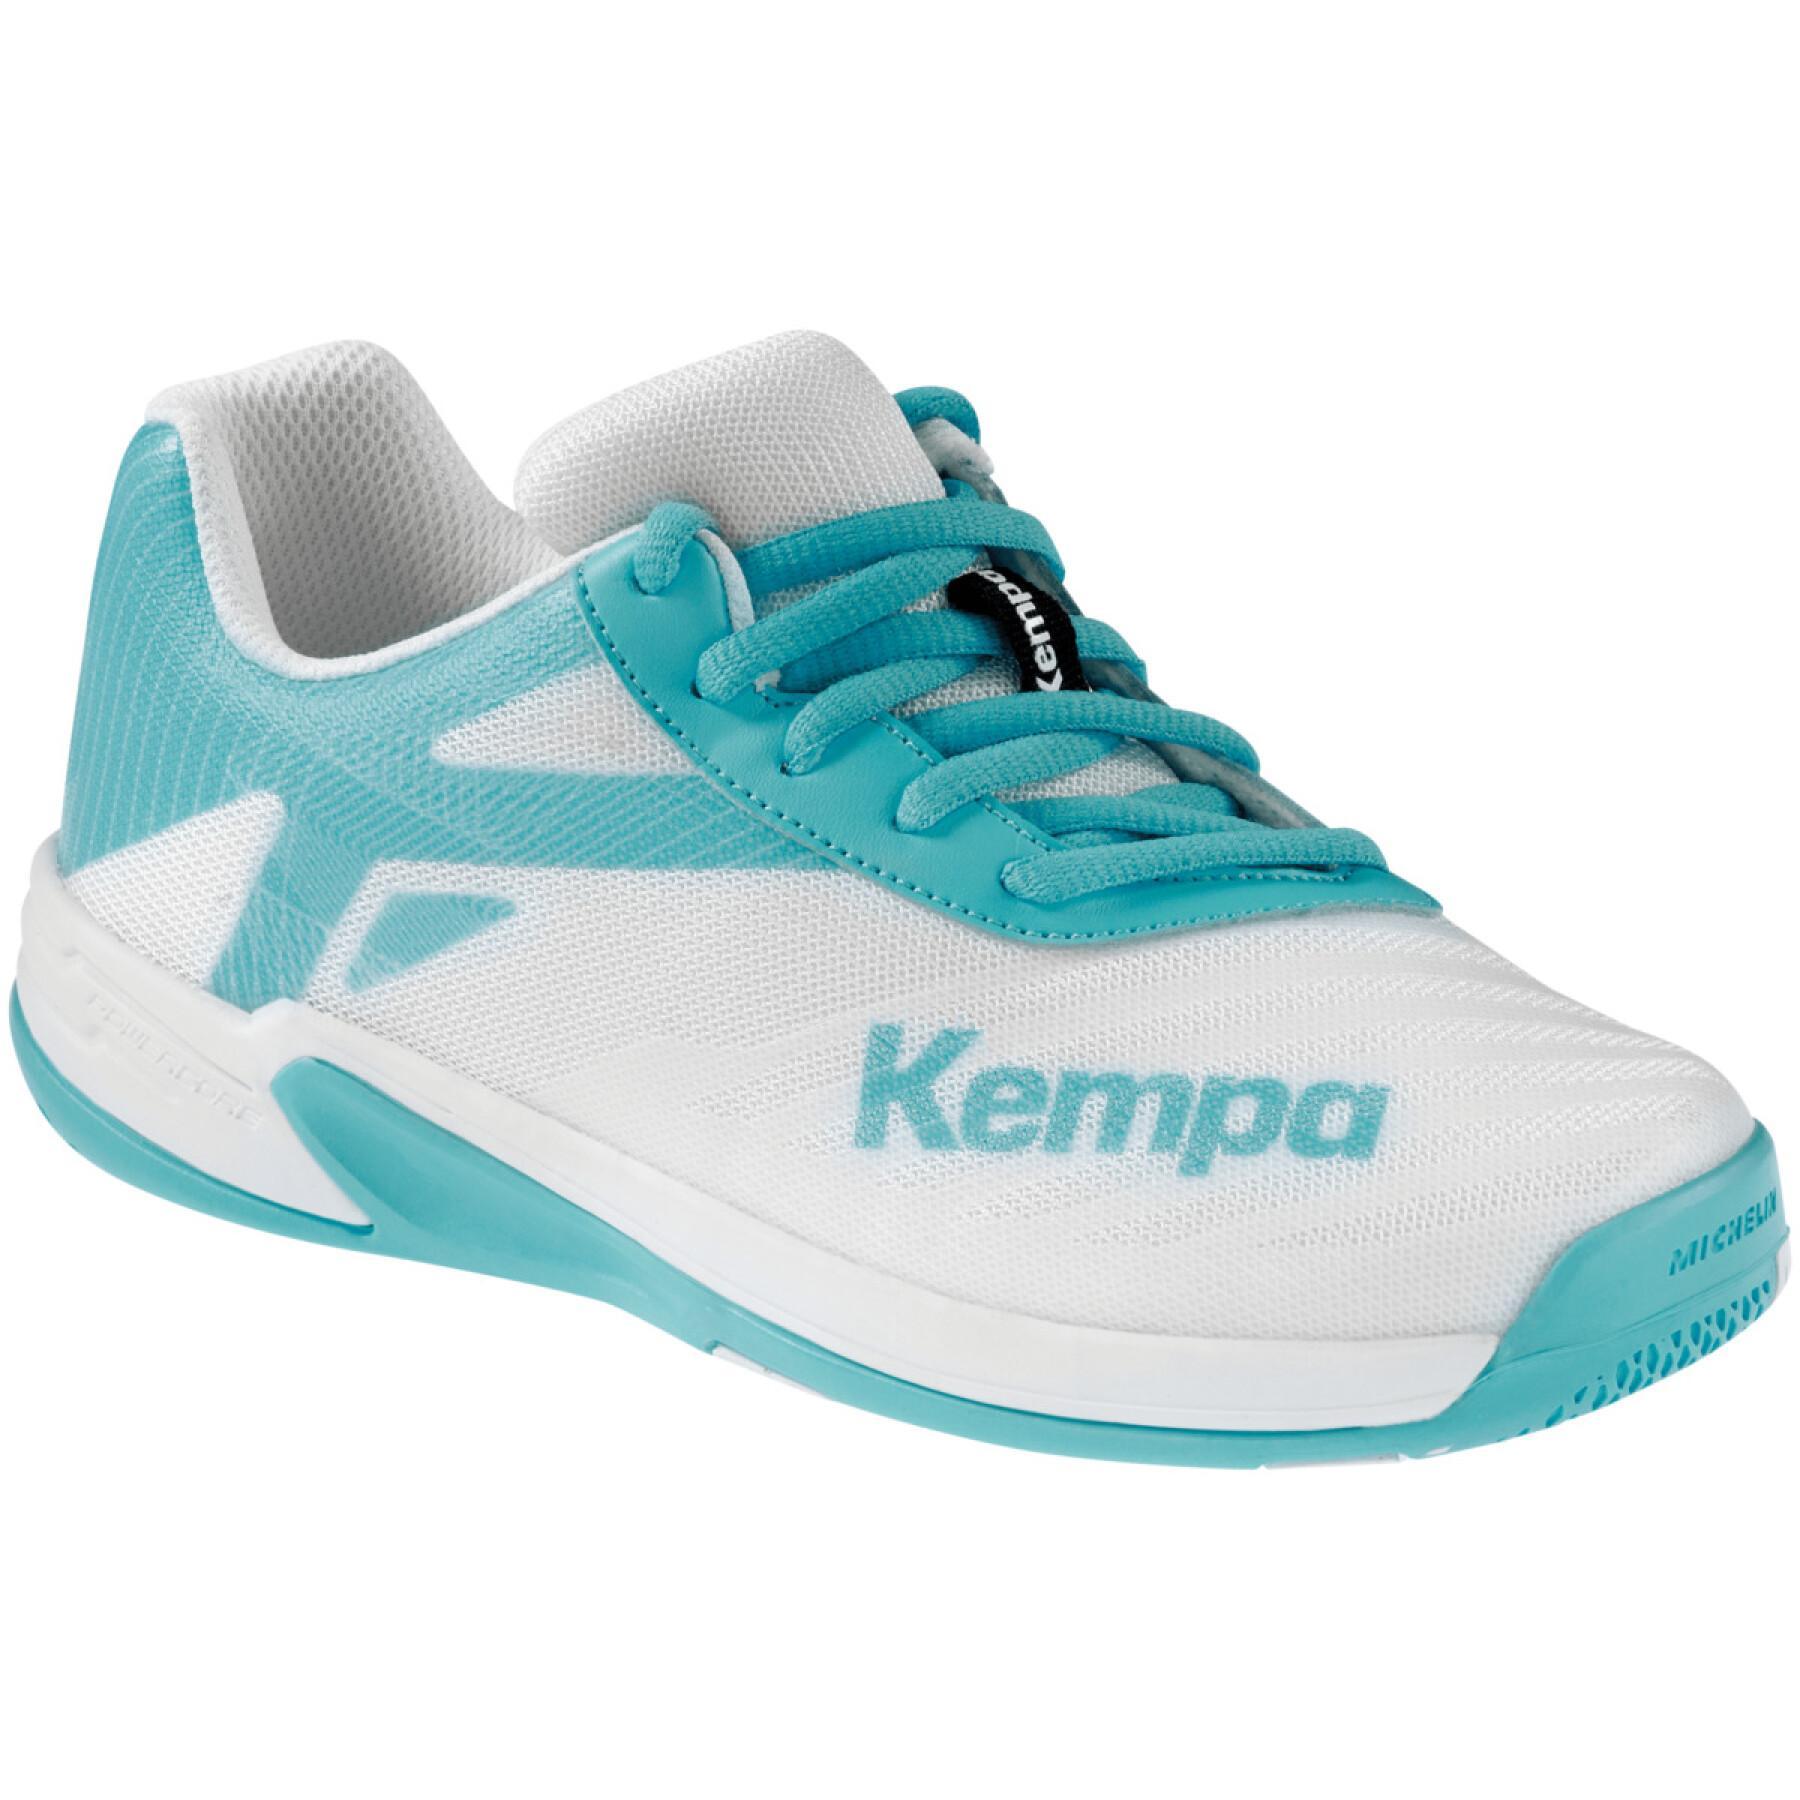 Zapatillas niños Kempa Wing 2.0 